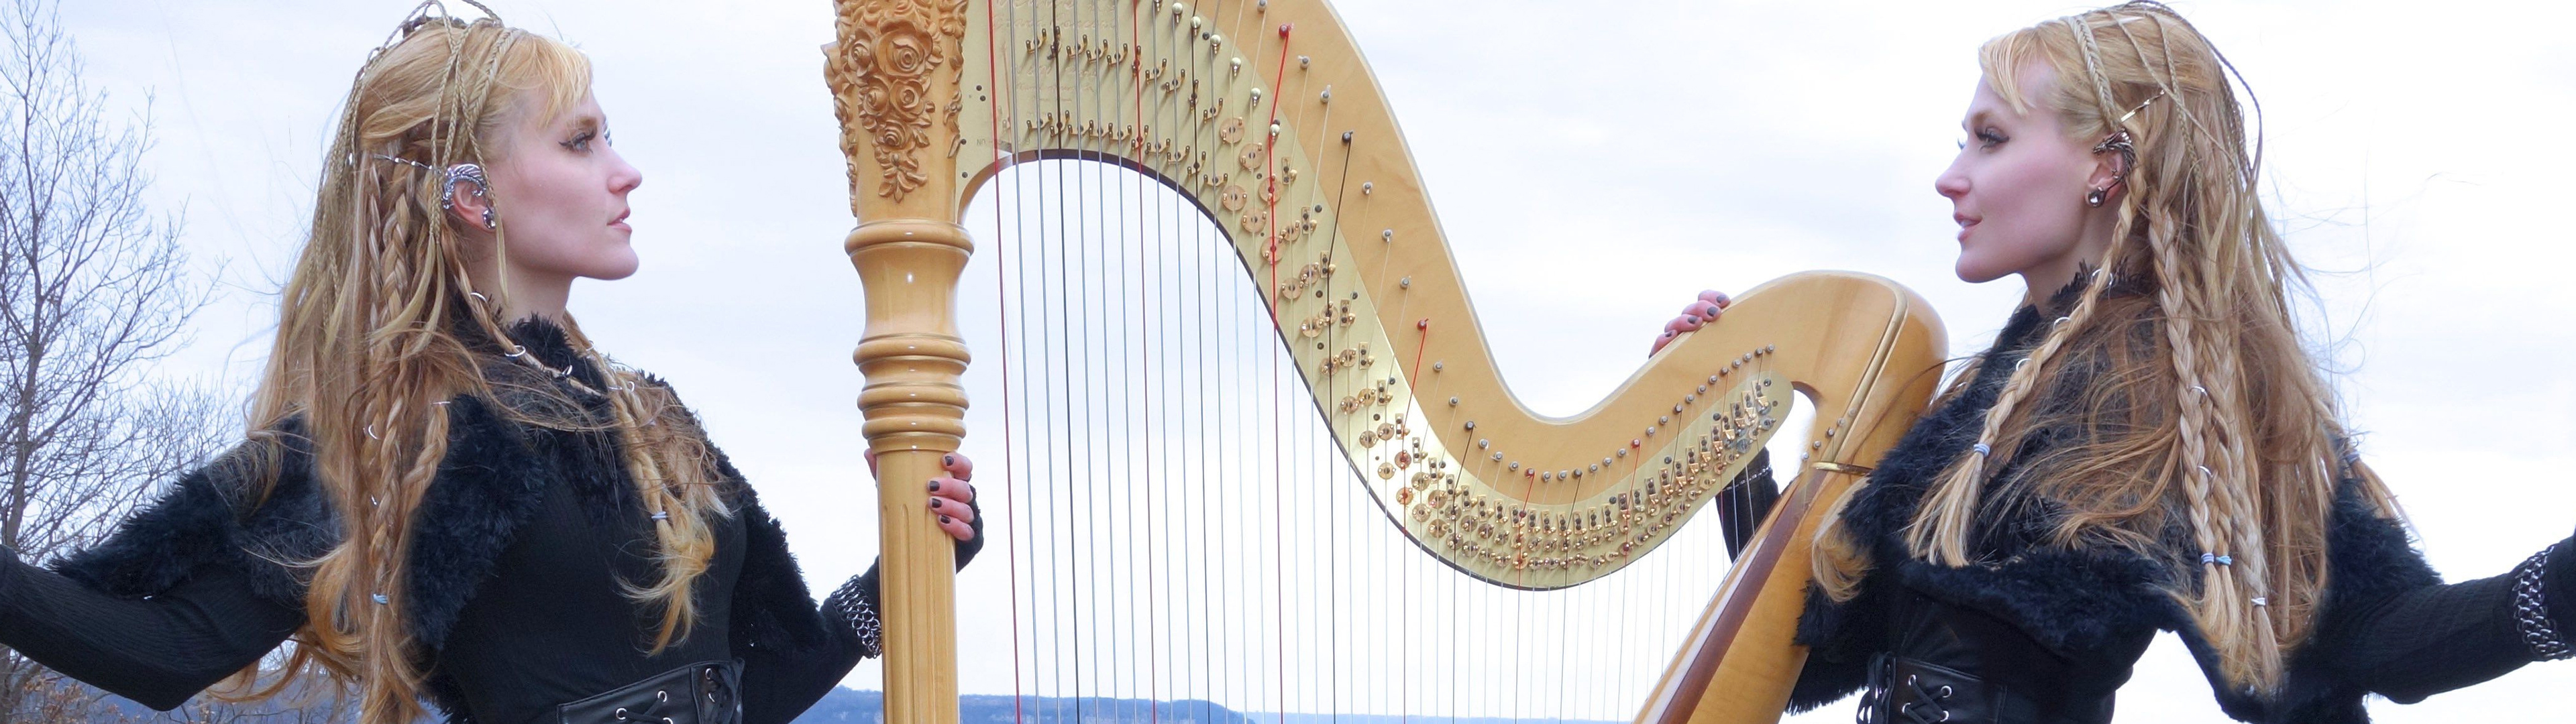 People 3840x1080 Harp Twins women musician twins blonde harp